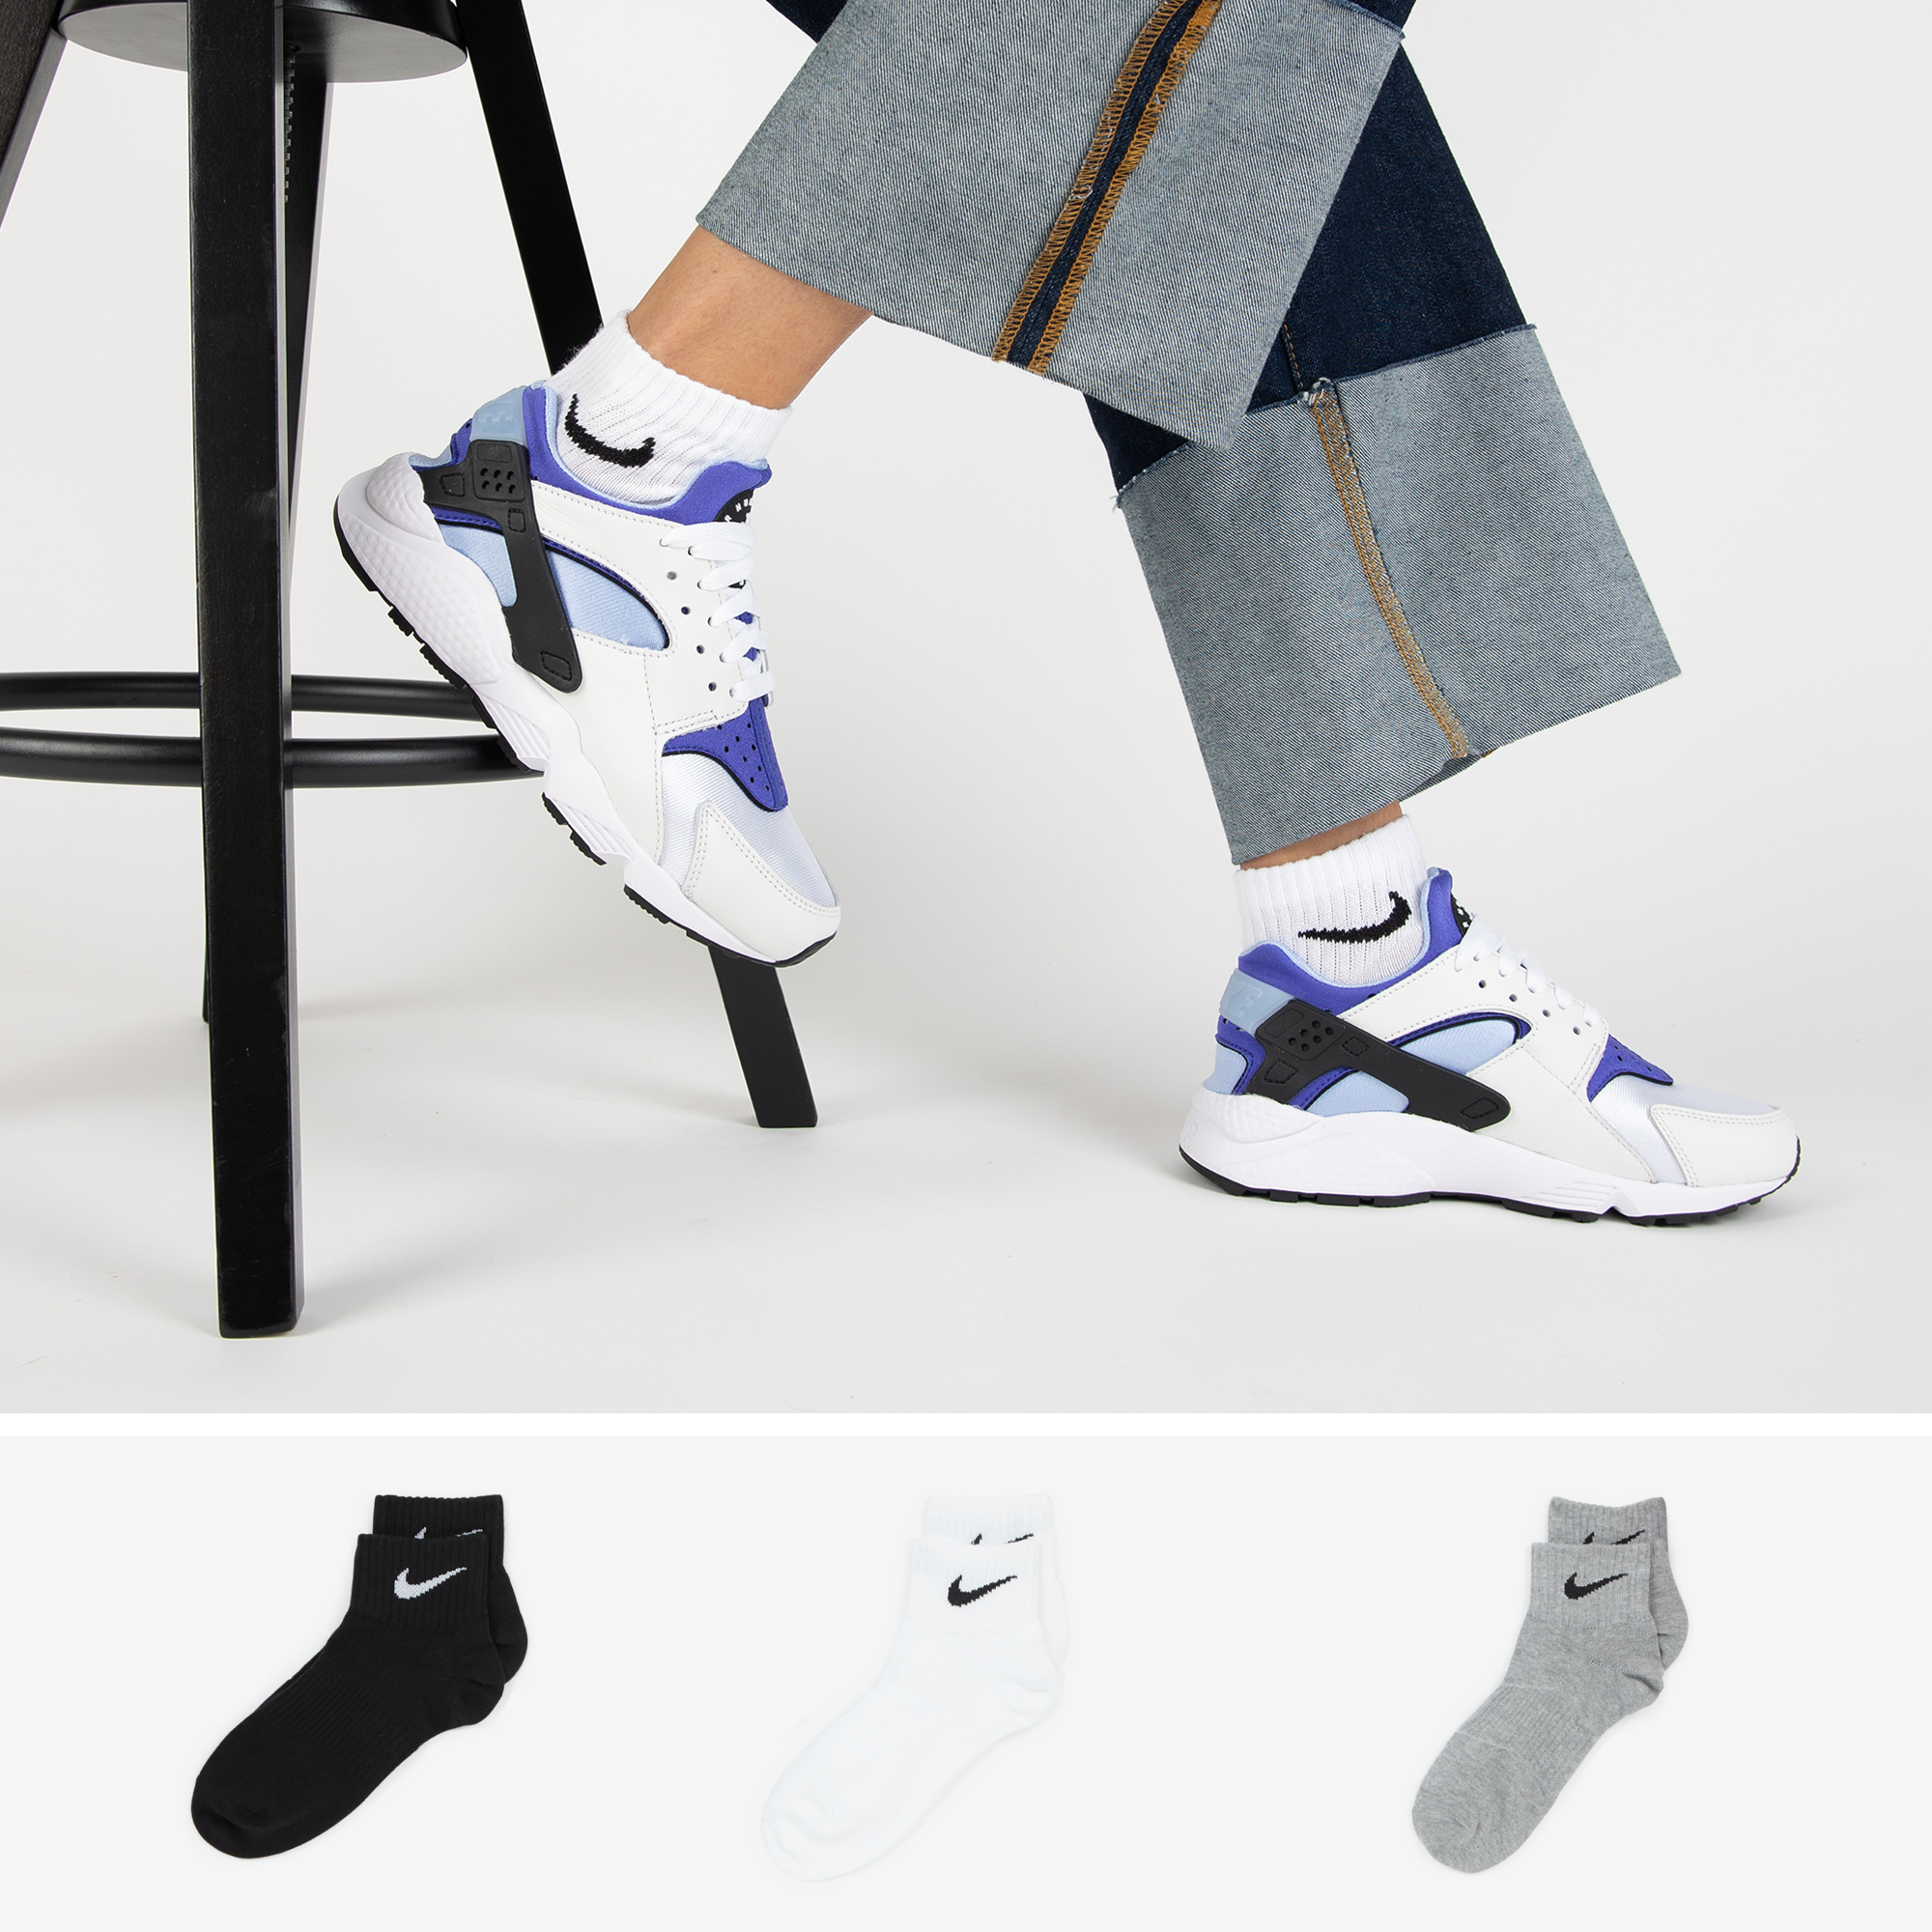 Nike Chaussettes X3 Quarter gris/noir 39/42 femme